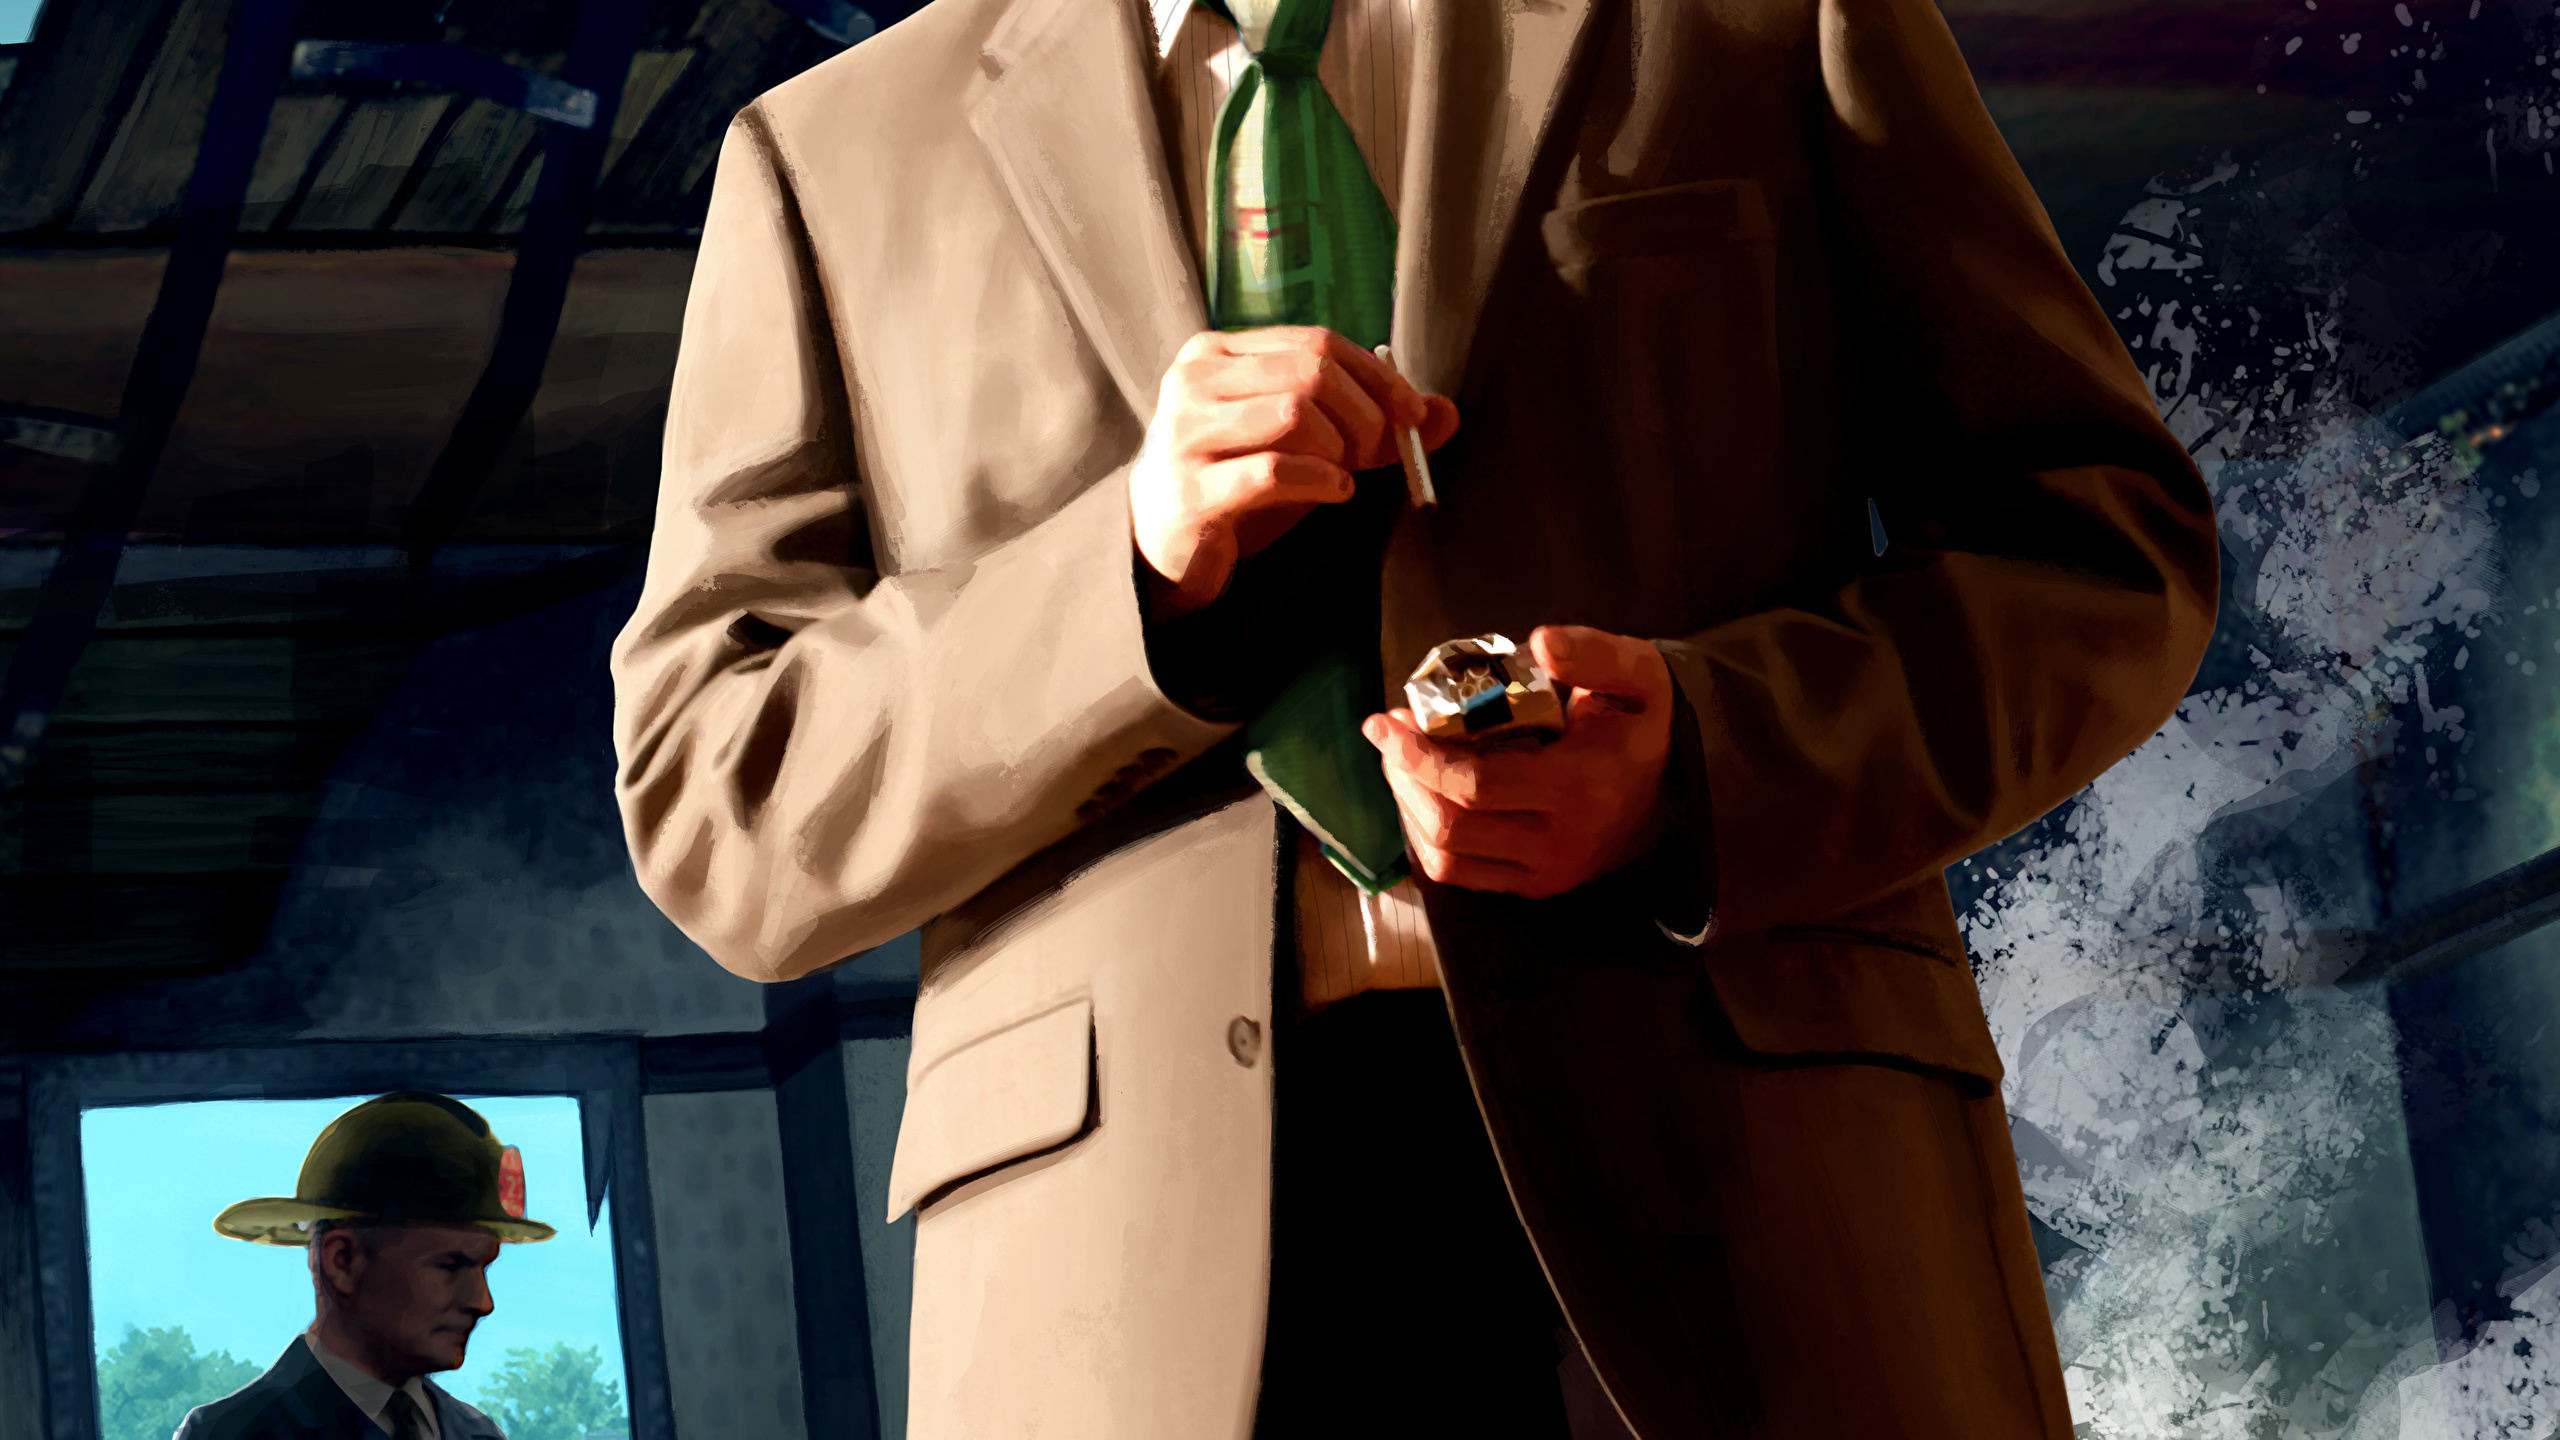 Desktop Wallpapers L.A. Noire Men Hat vdeo game Suit 2560x1440 for Mobile p...